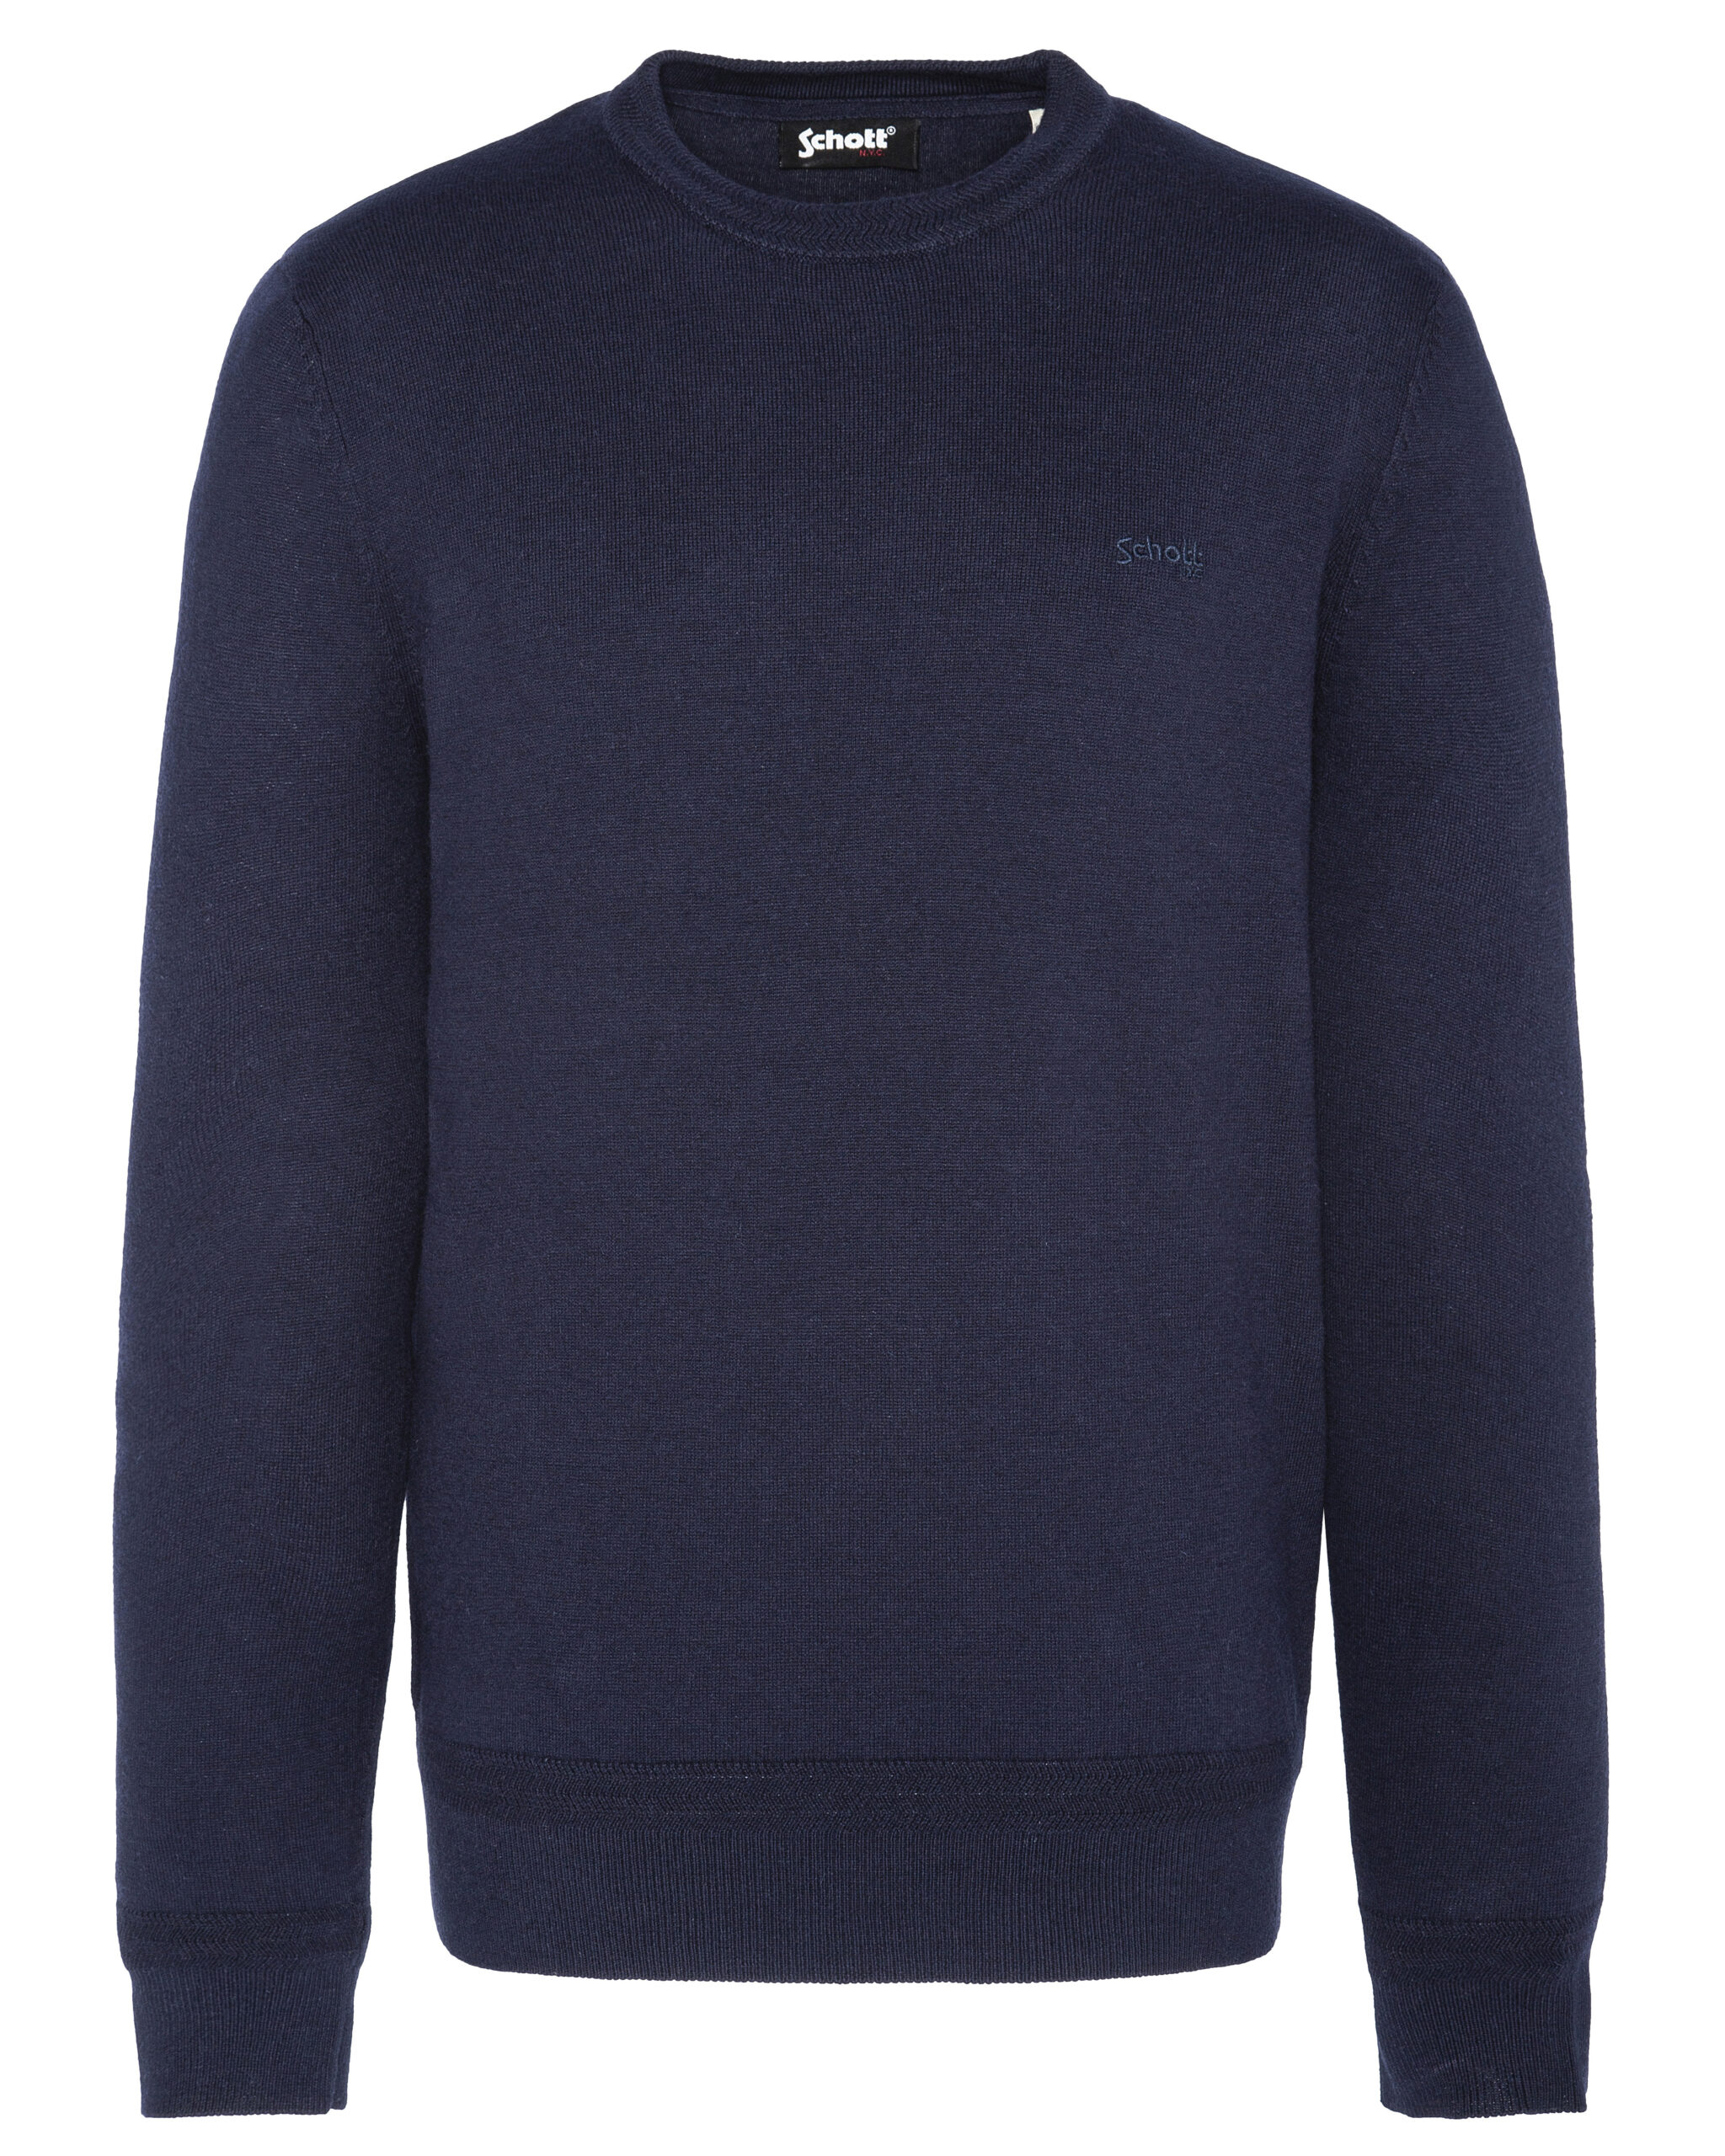 Round Neck Sweater Schott Blue